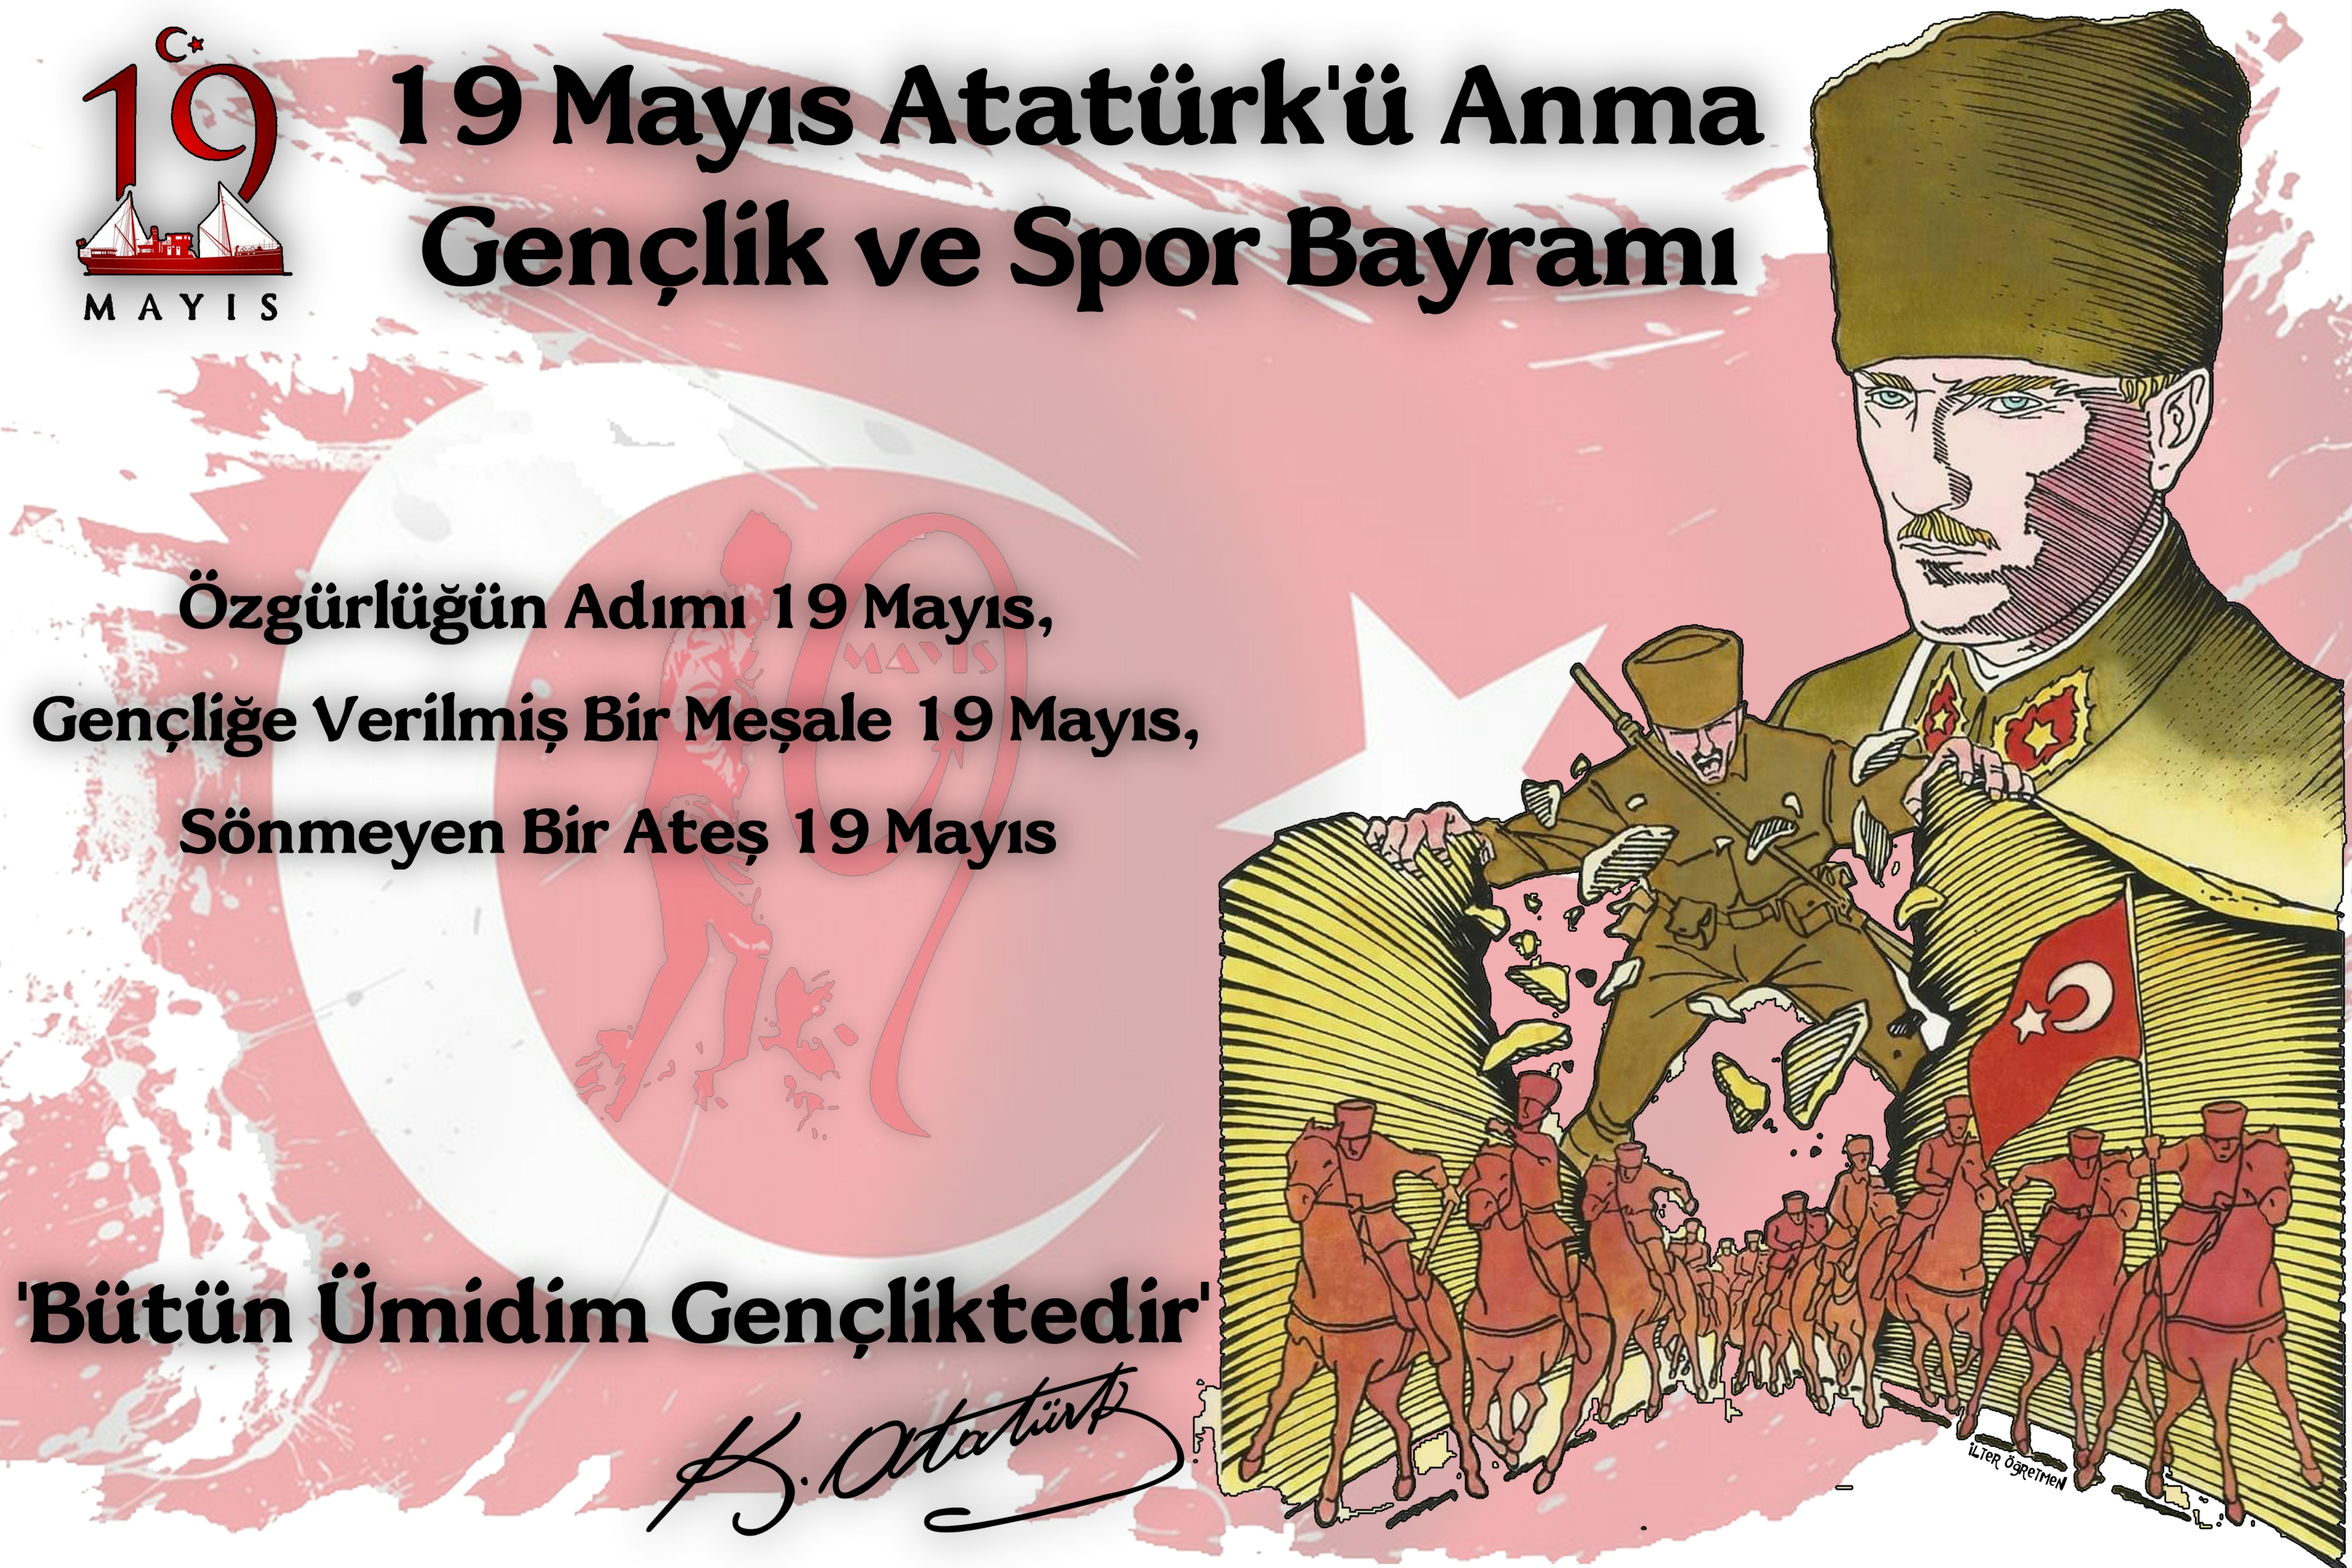 19 Mayıs Atatürk'ü Anma, Gençlik ve Spor Bayramı Poster